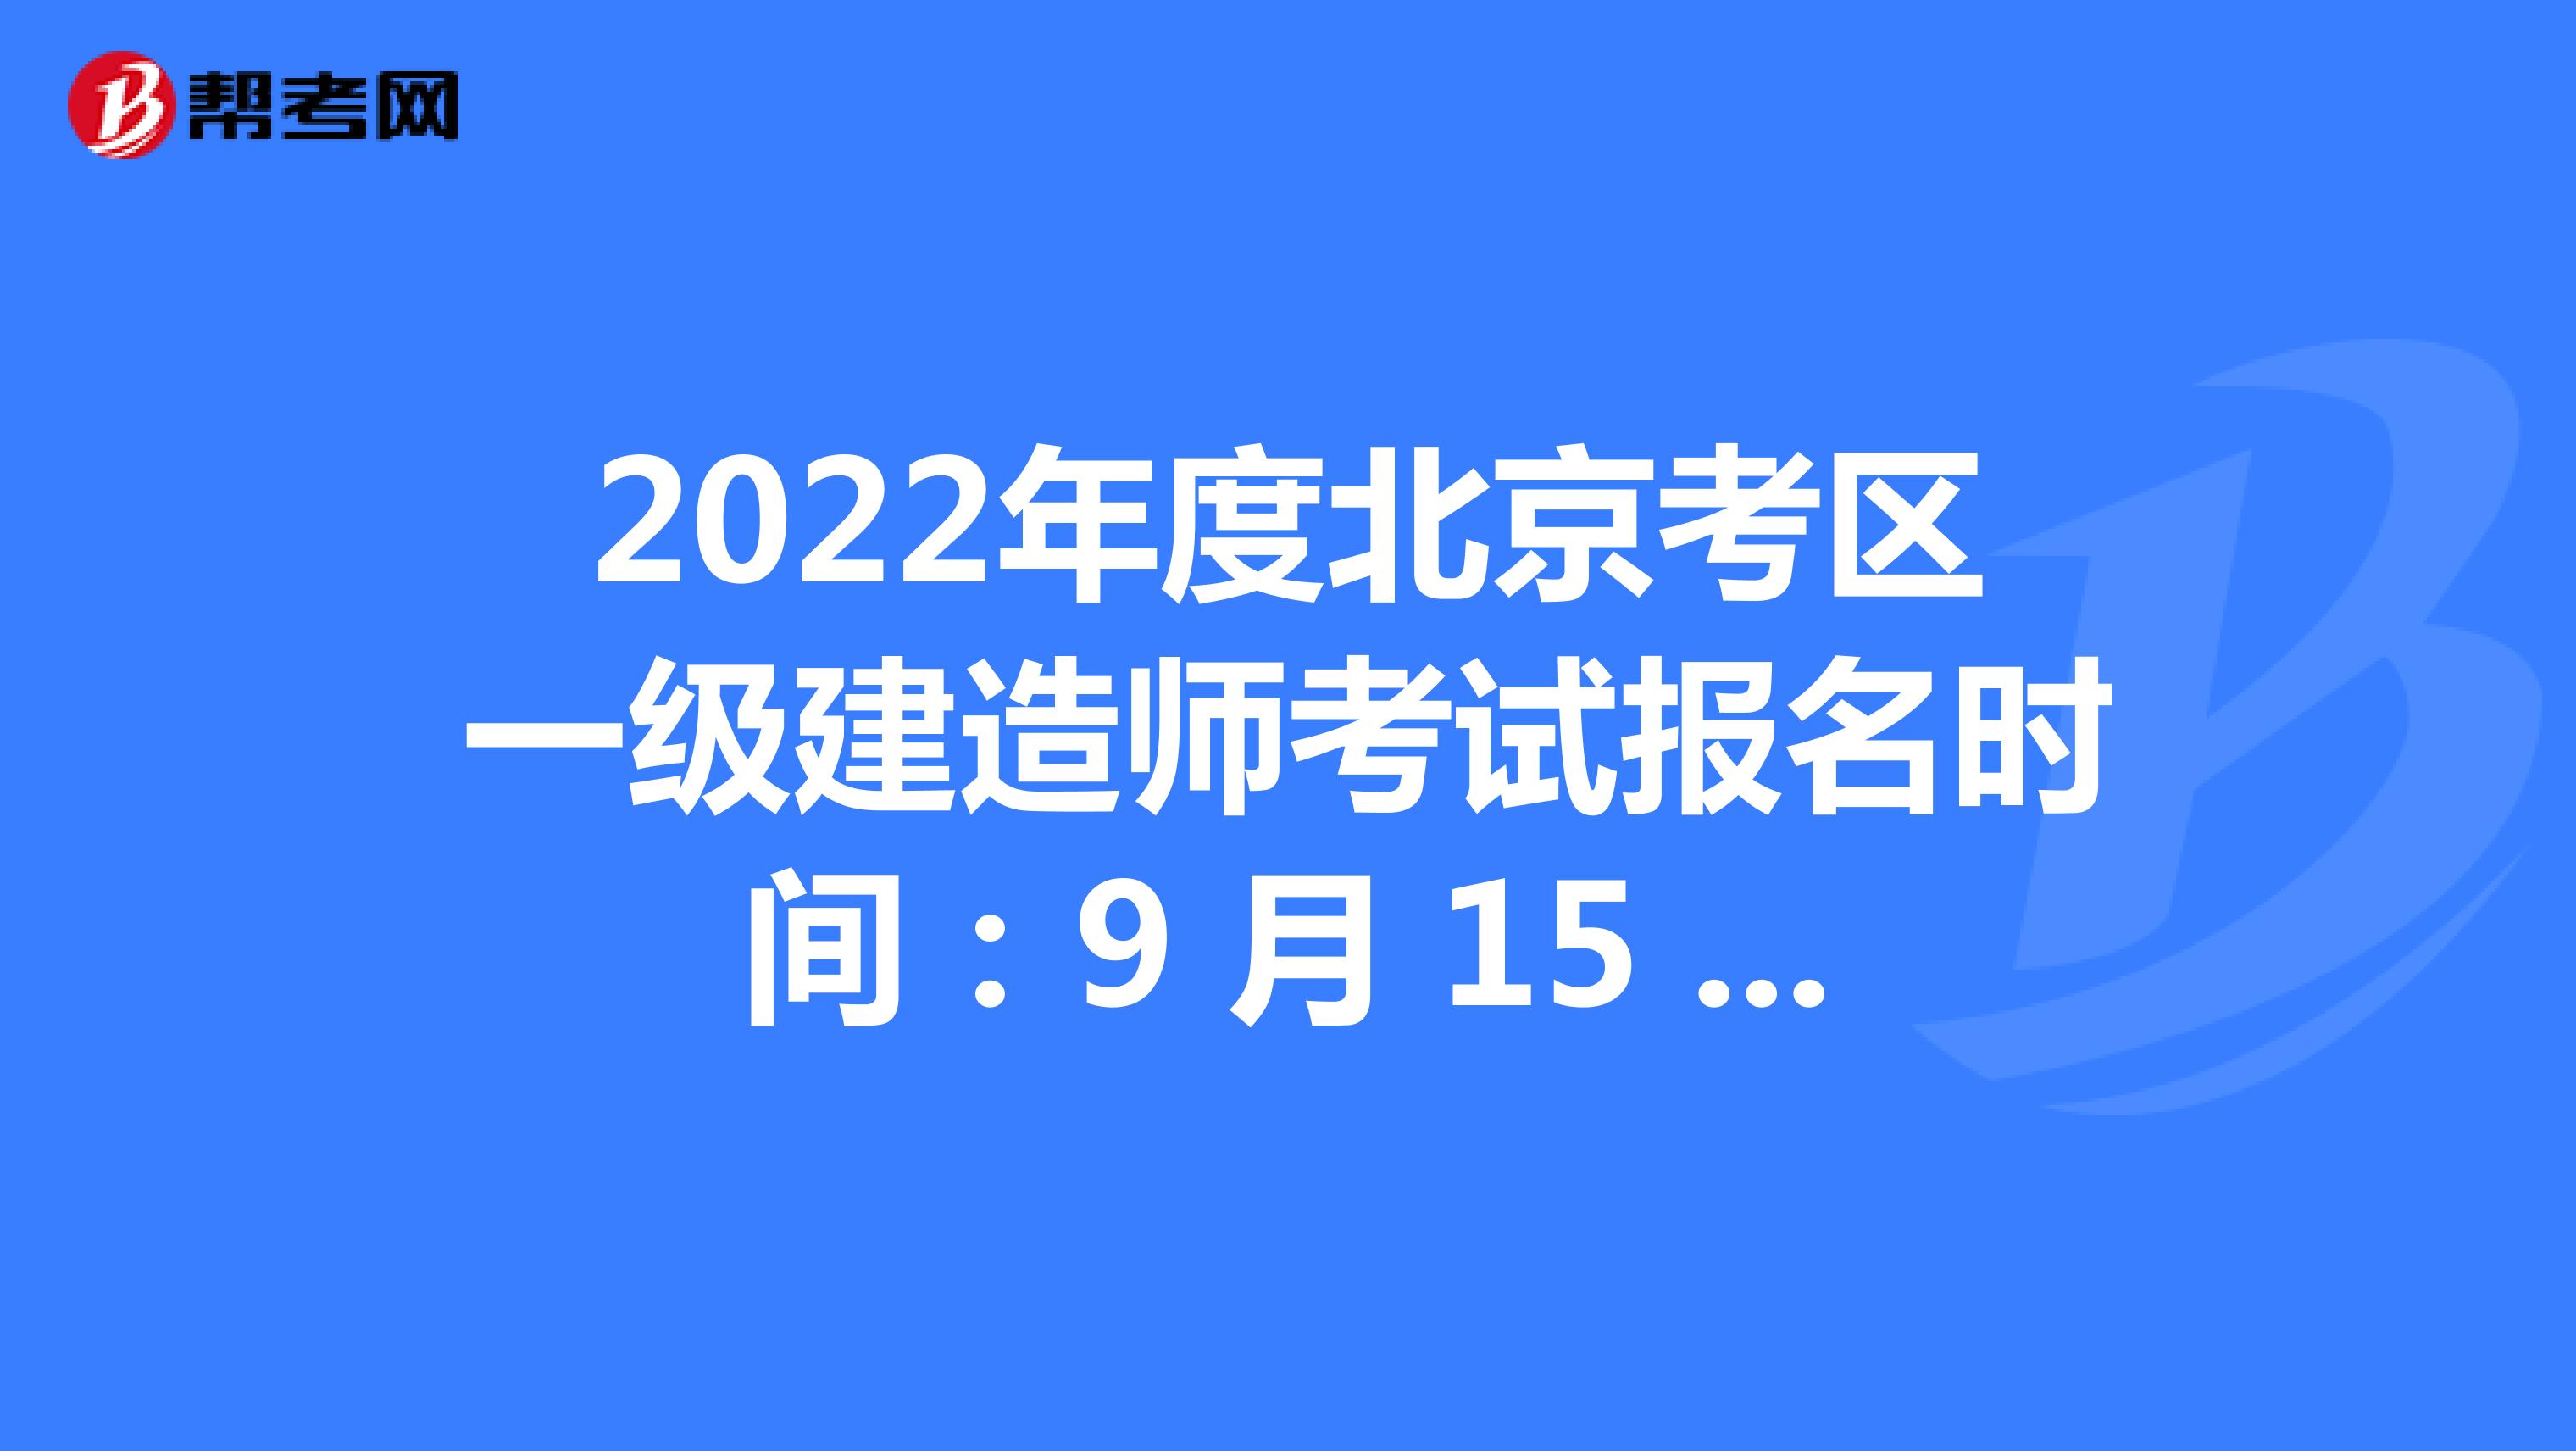 2022年度北京考区一级建造师考试报名时间：9 月 15 日至 9 月 21 日